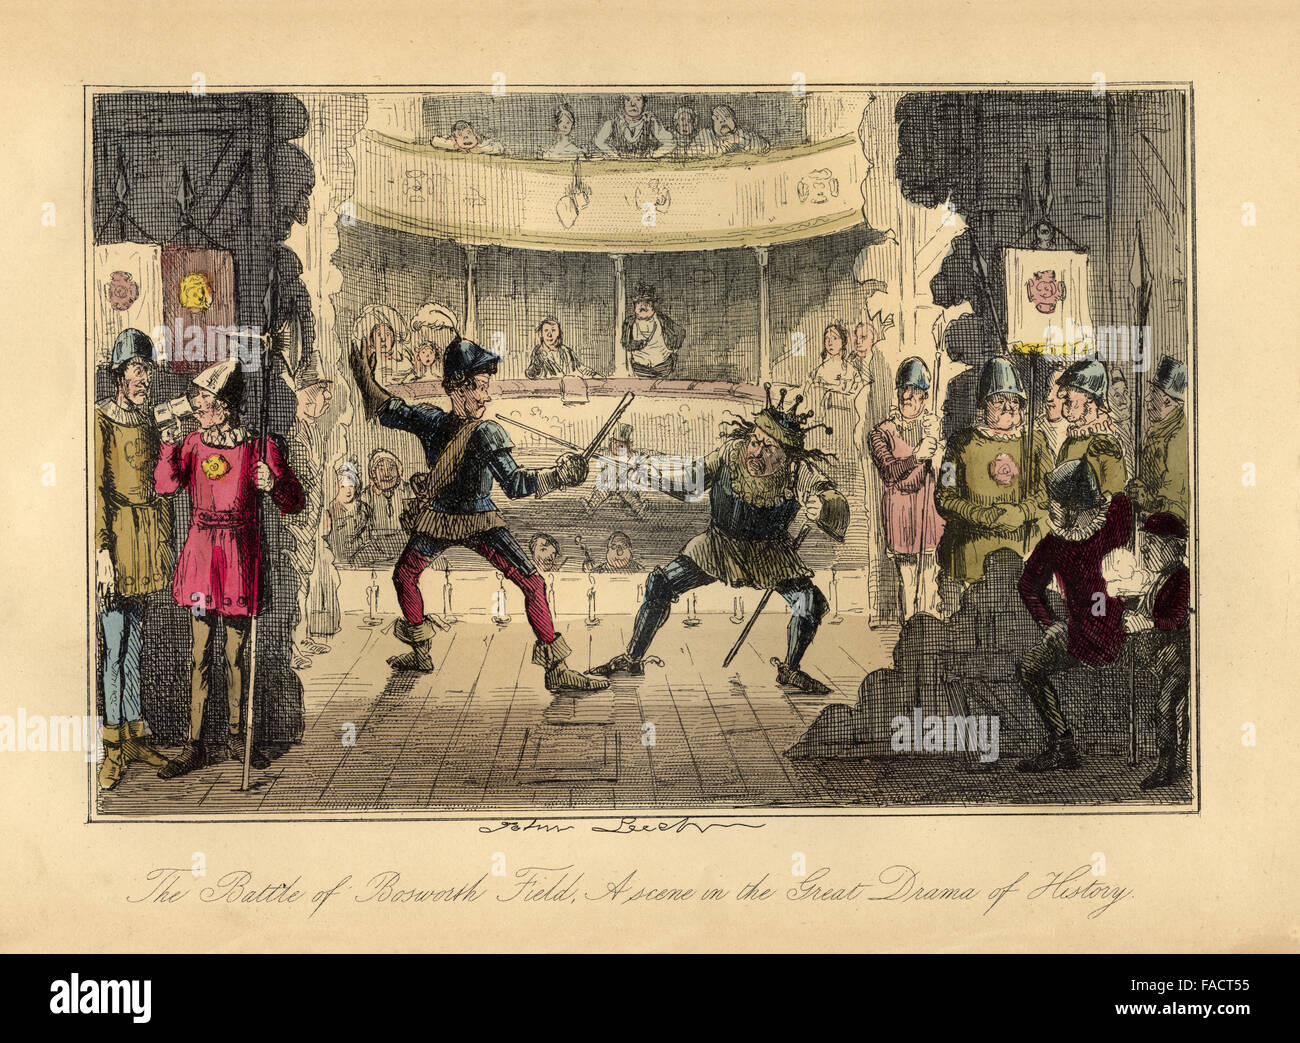 Colorati a mano fumetto illustrazione dal 1846 raffigurante un satirico di rievocazione della battaglia di Bosworth Field del 1485 come un dramma teatrale Foto Stock